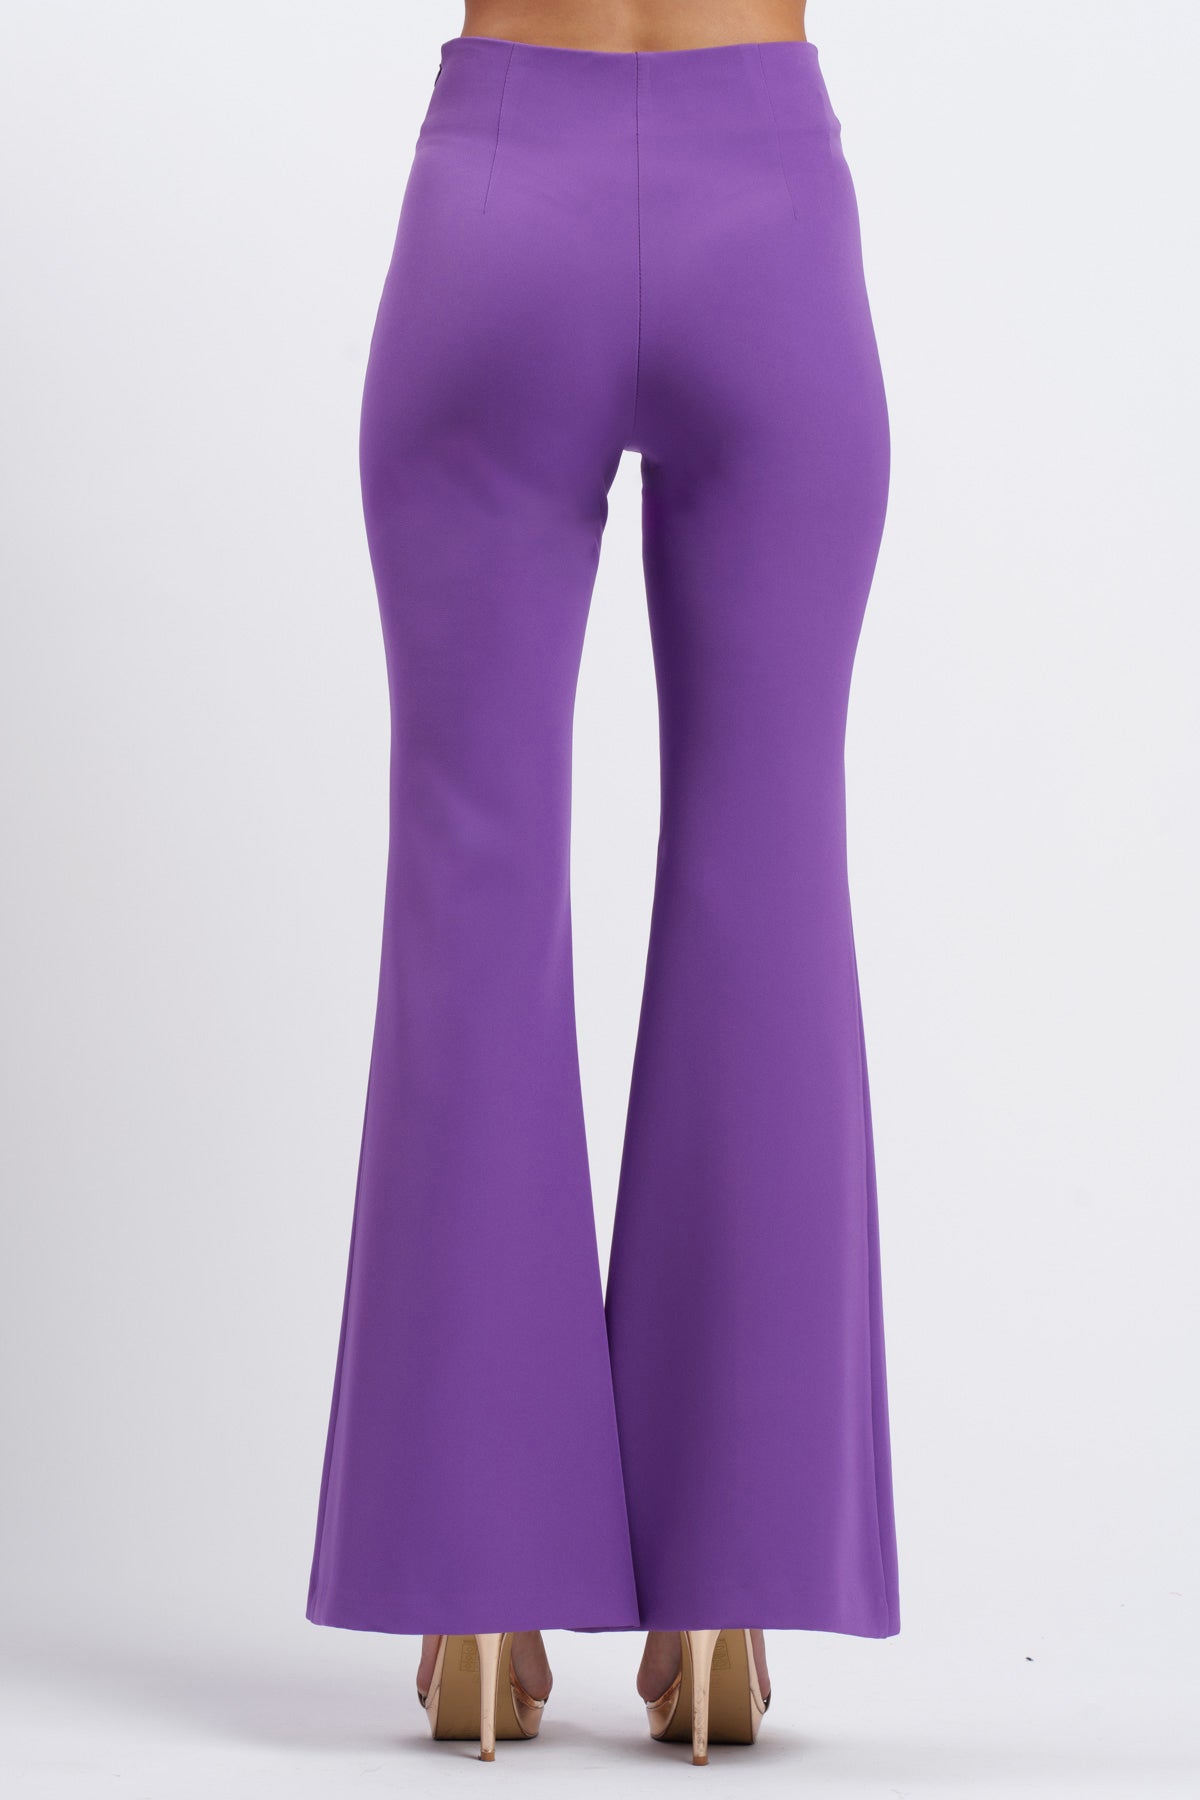 Pantalone Andromeda Violet